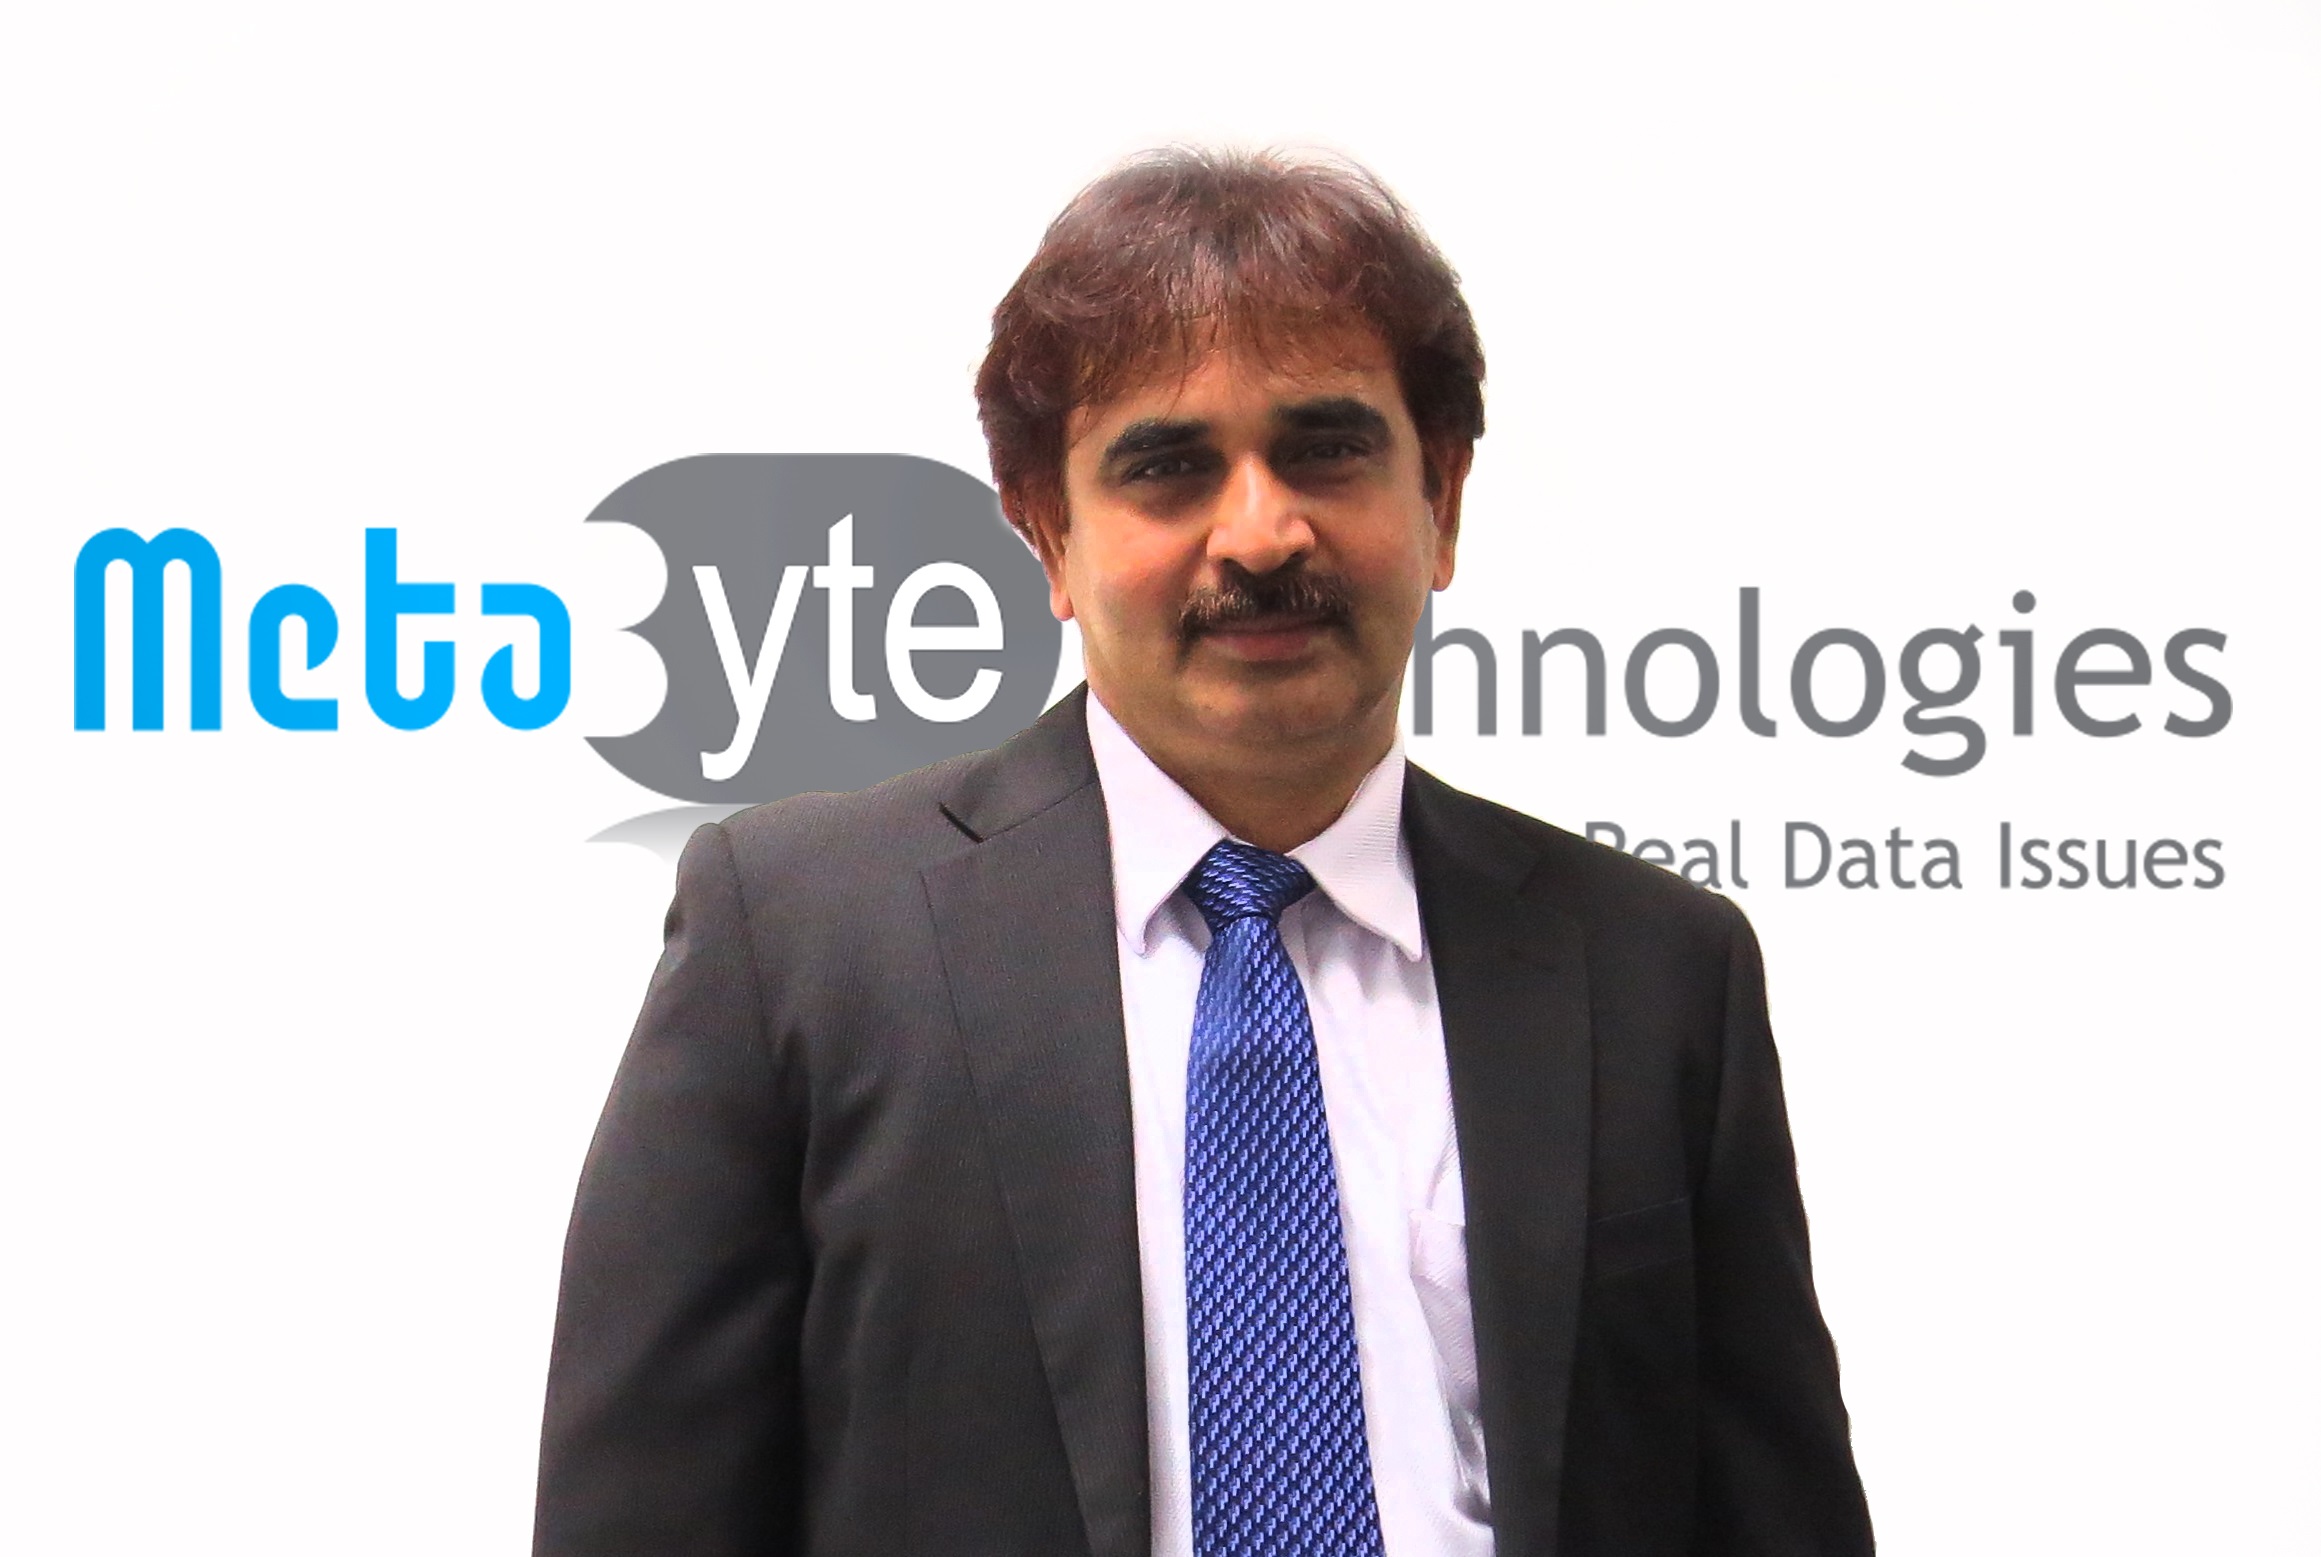 Mohamed Zakir Hussain  vice president of sales at Meta Byte Technologies